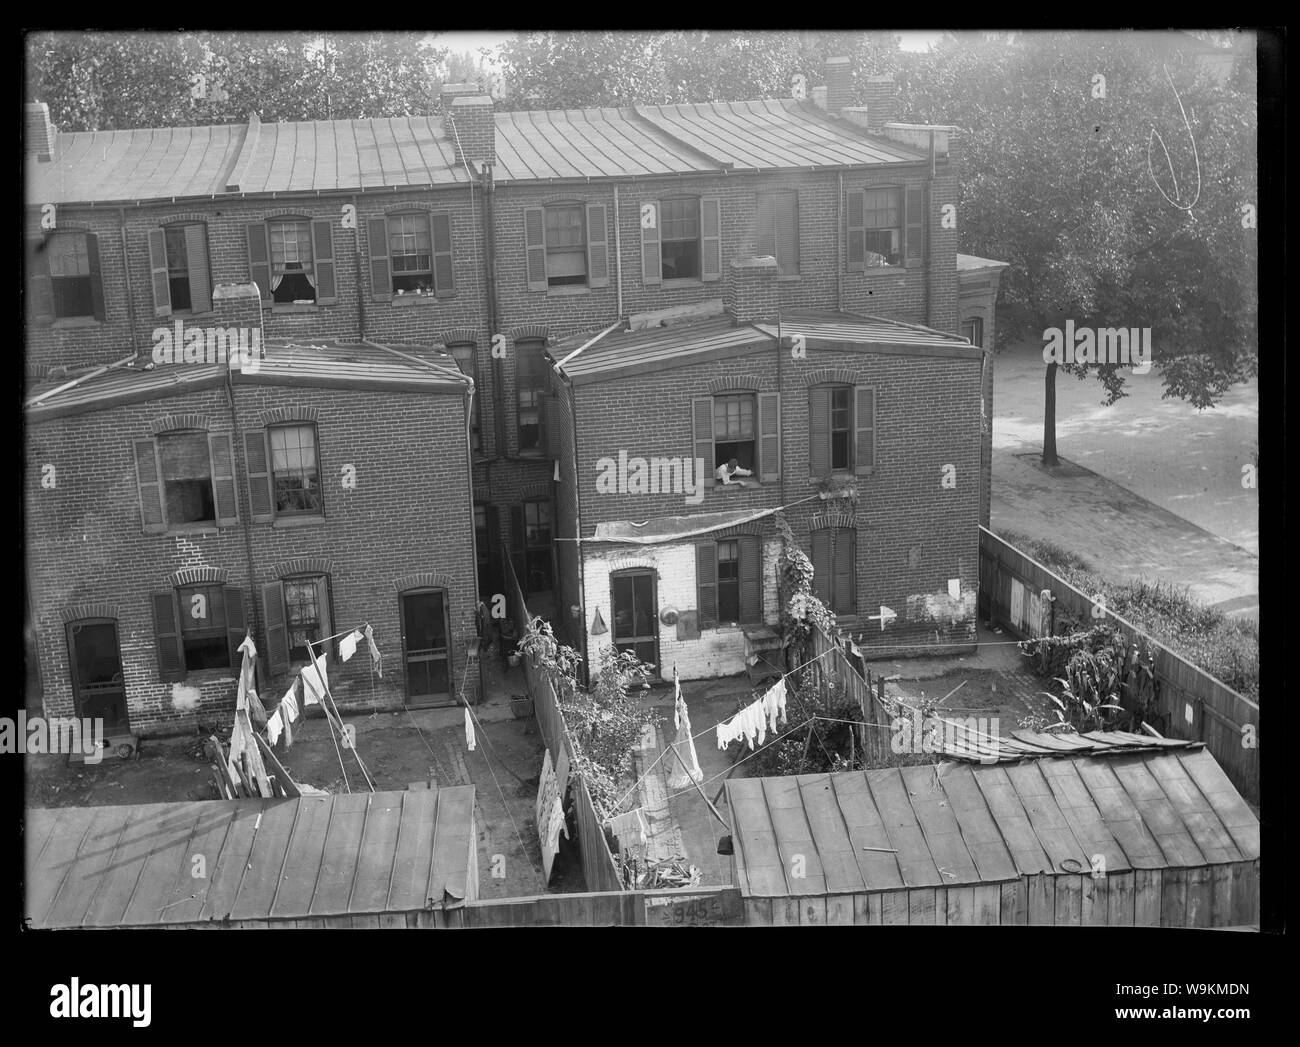 Une vue sur les maisons en rangée probablement dans S.W., montrant la pendaison sur corde à linge dans les cours Banque D'Images